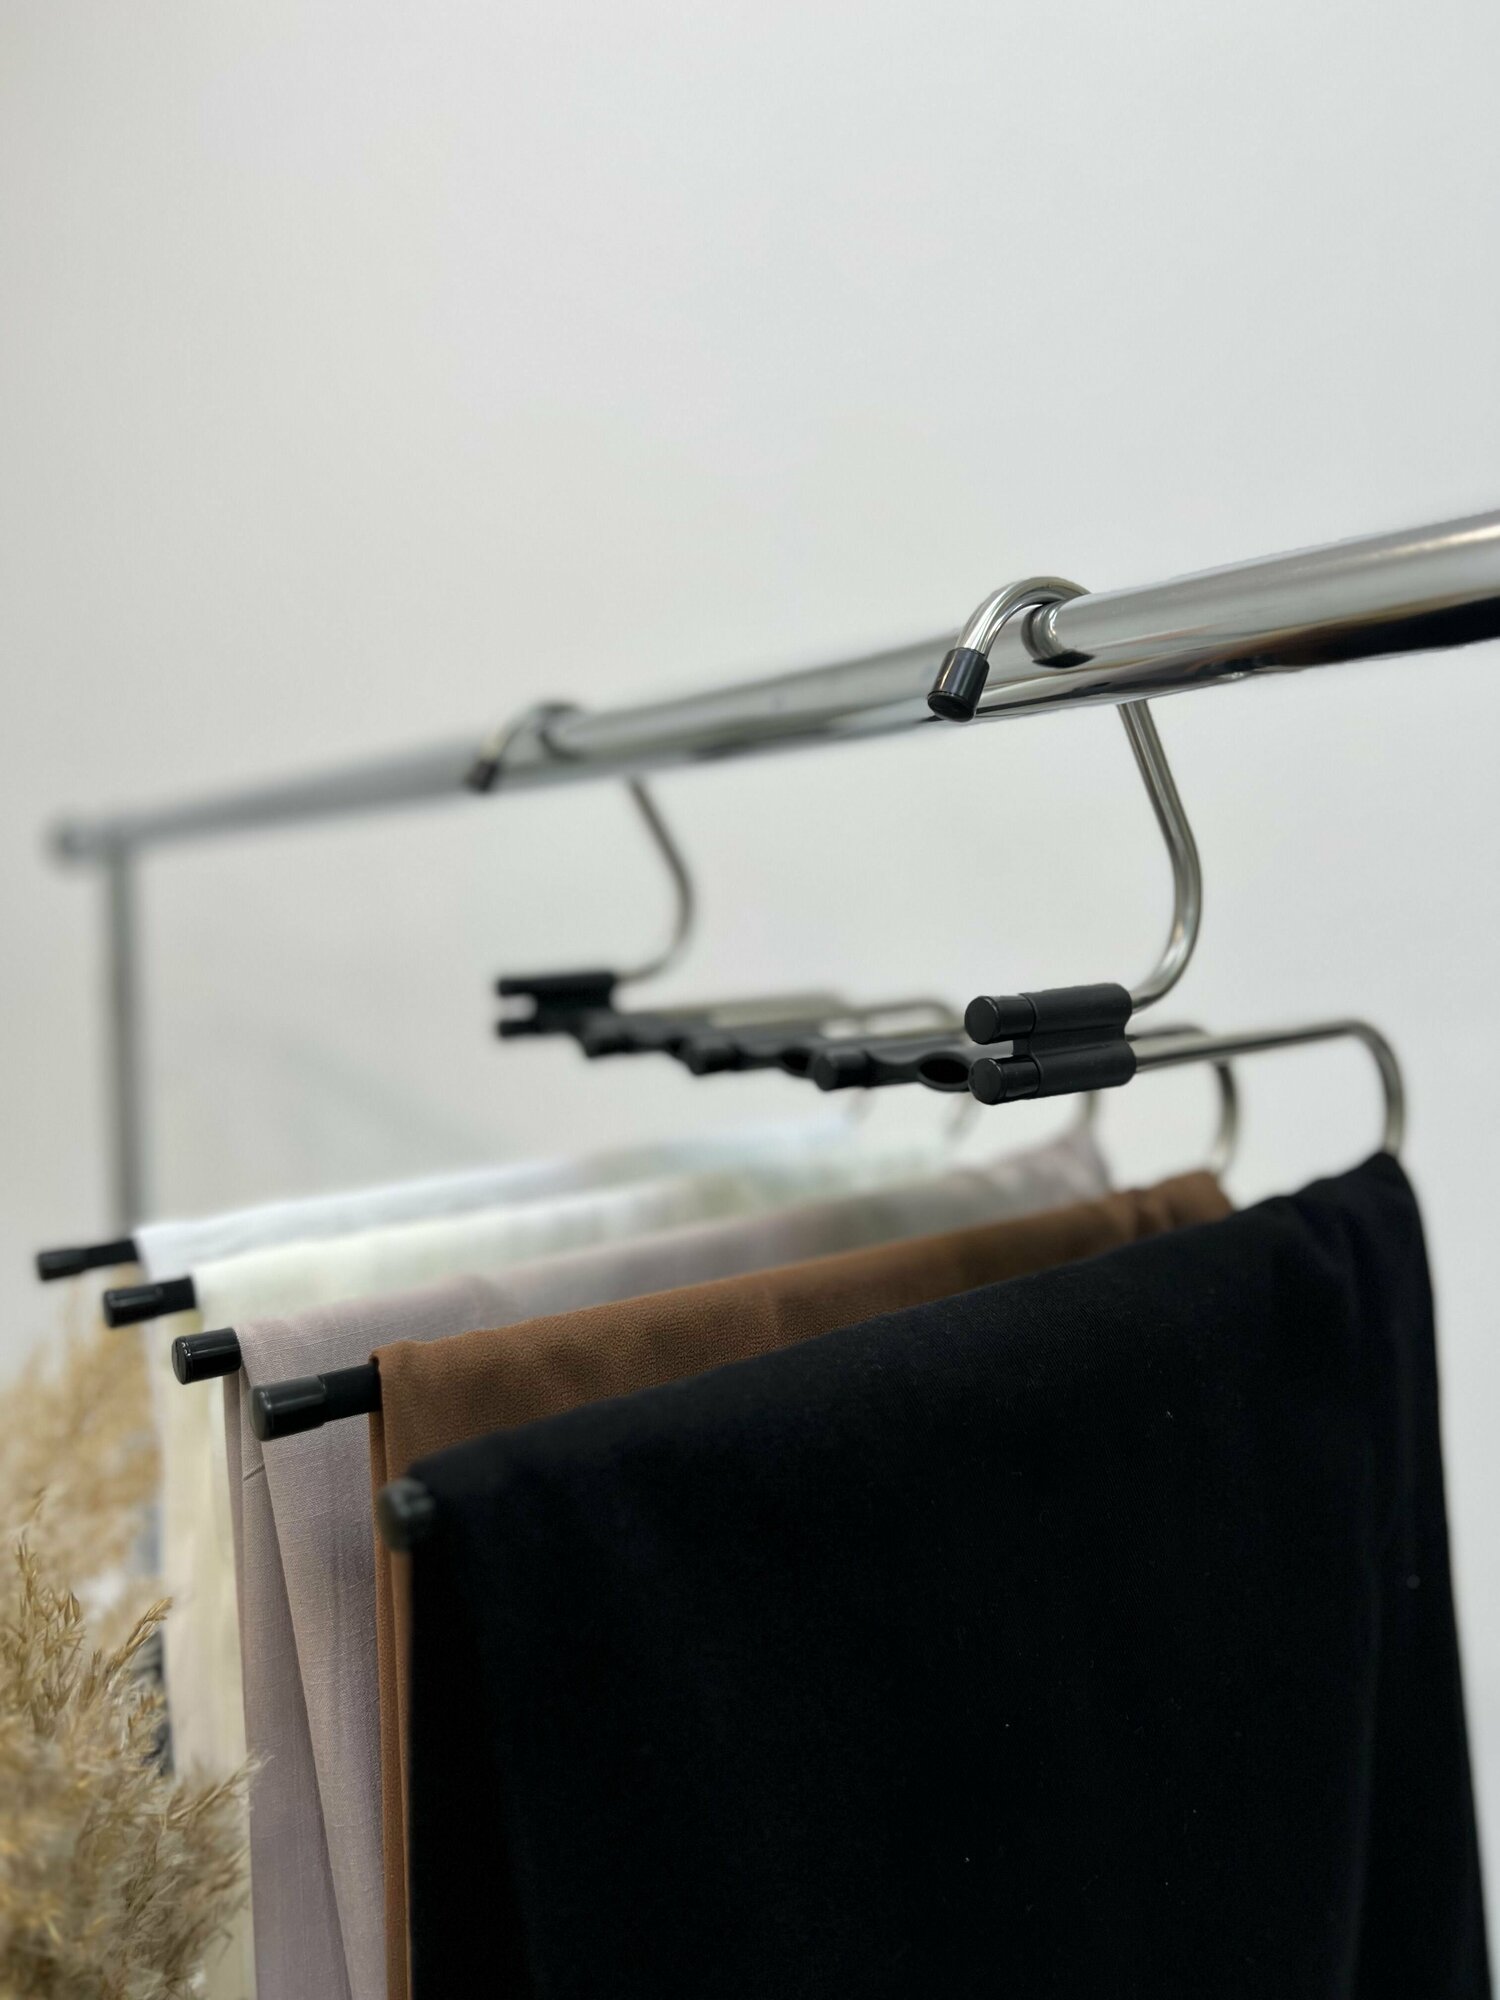 Вешалка-органайзер для брюк многоуровневая с антискользящим покрытием, Складная вешалка-трансформер с металлическими крючками, 5 уровней для одежды